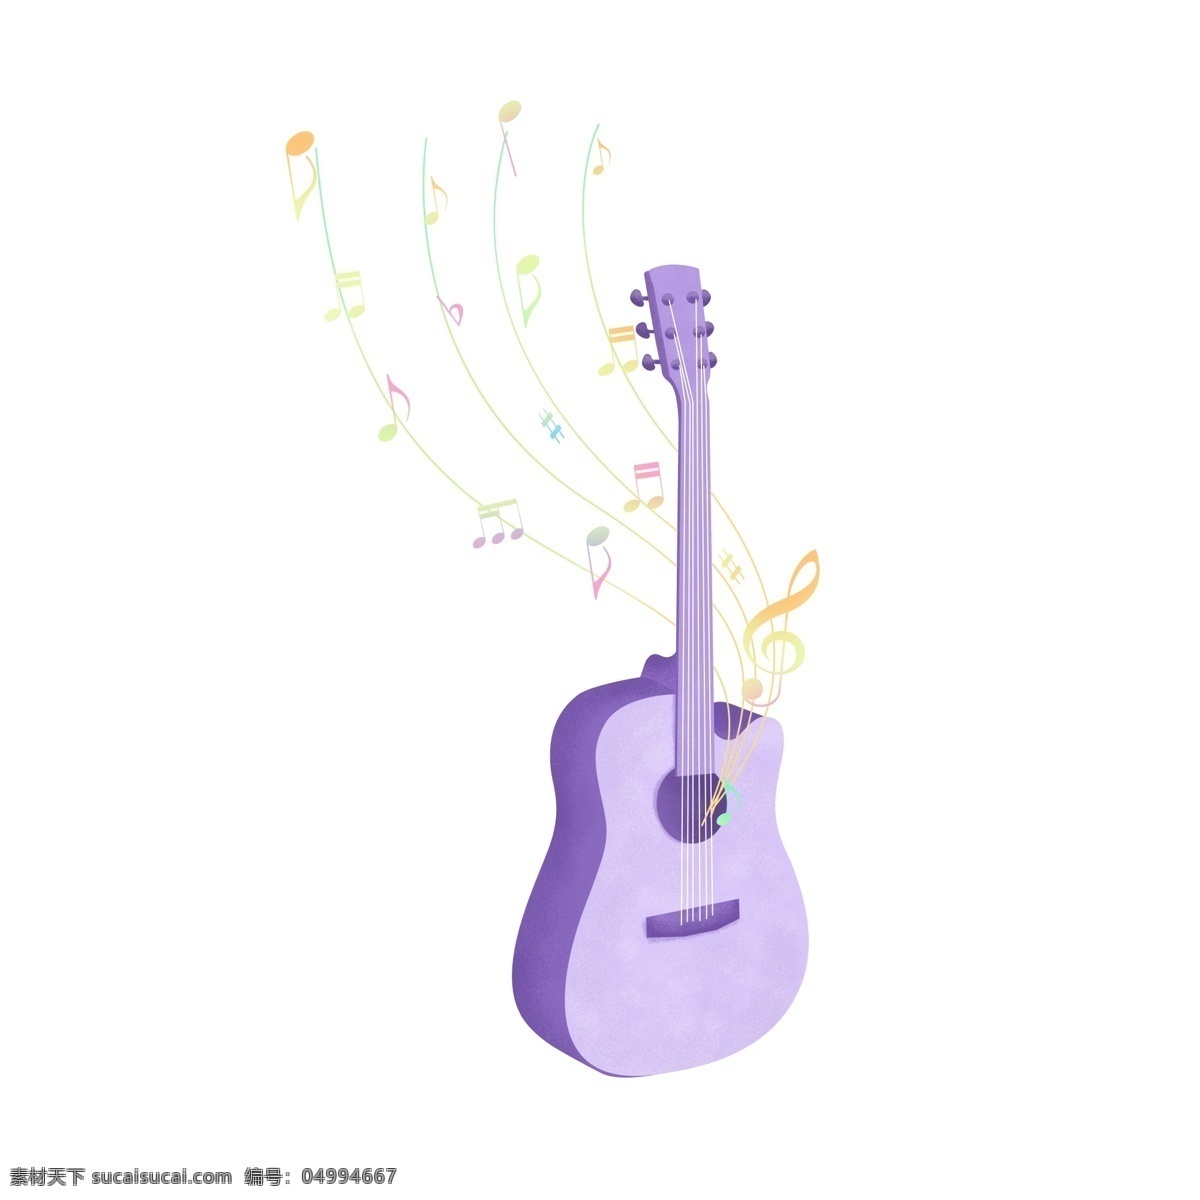 手绘 渐变 漂浮 音符 环绕 乐器 紫色 吉他 装饰 图案 手绘吉他 手绘乐器 乐器元素 吉他元素 音符元素